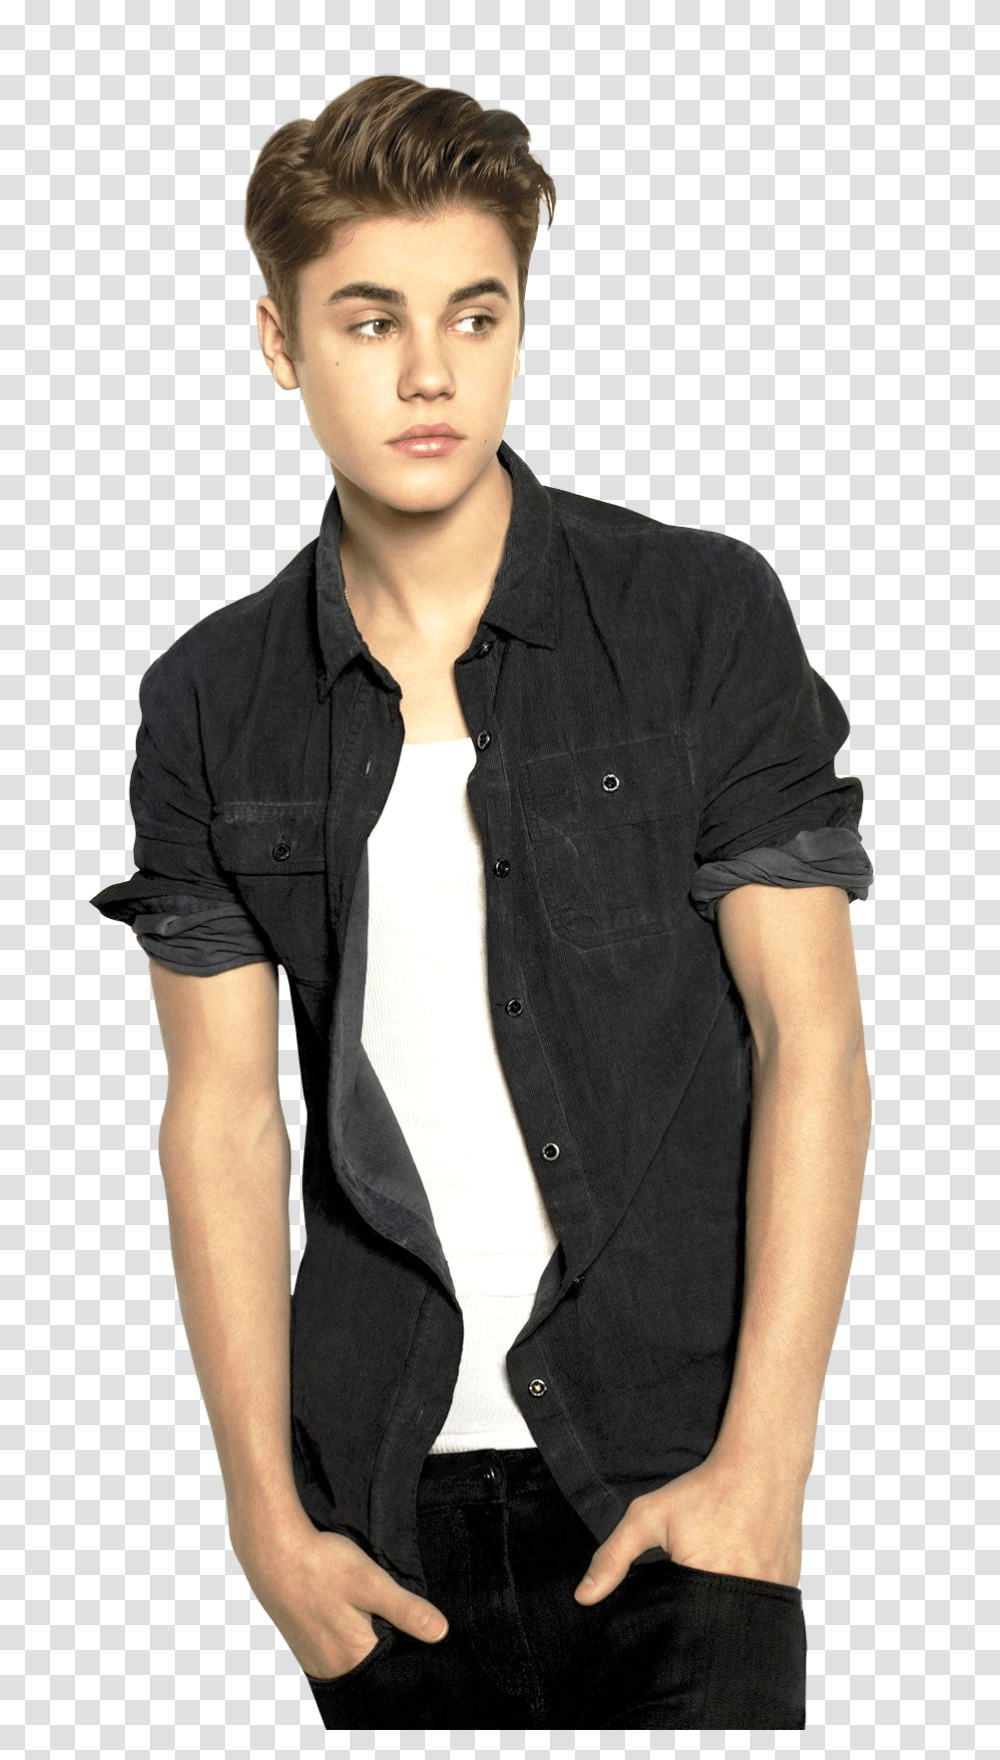 Justin Bieber Image, Celebrity, Person, Sleeve Transparent Png